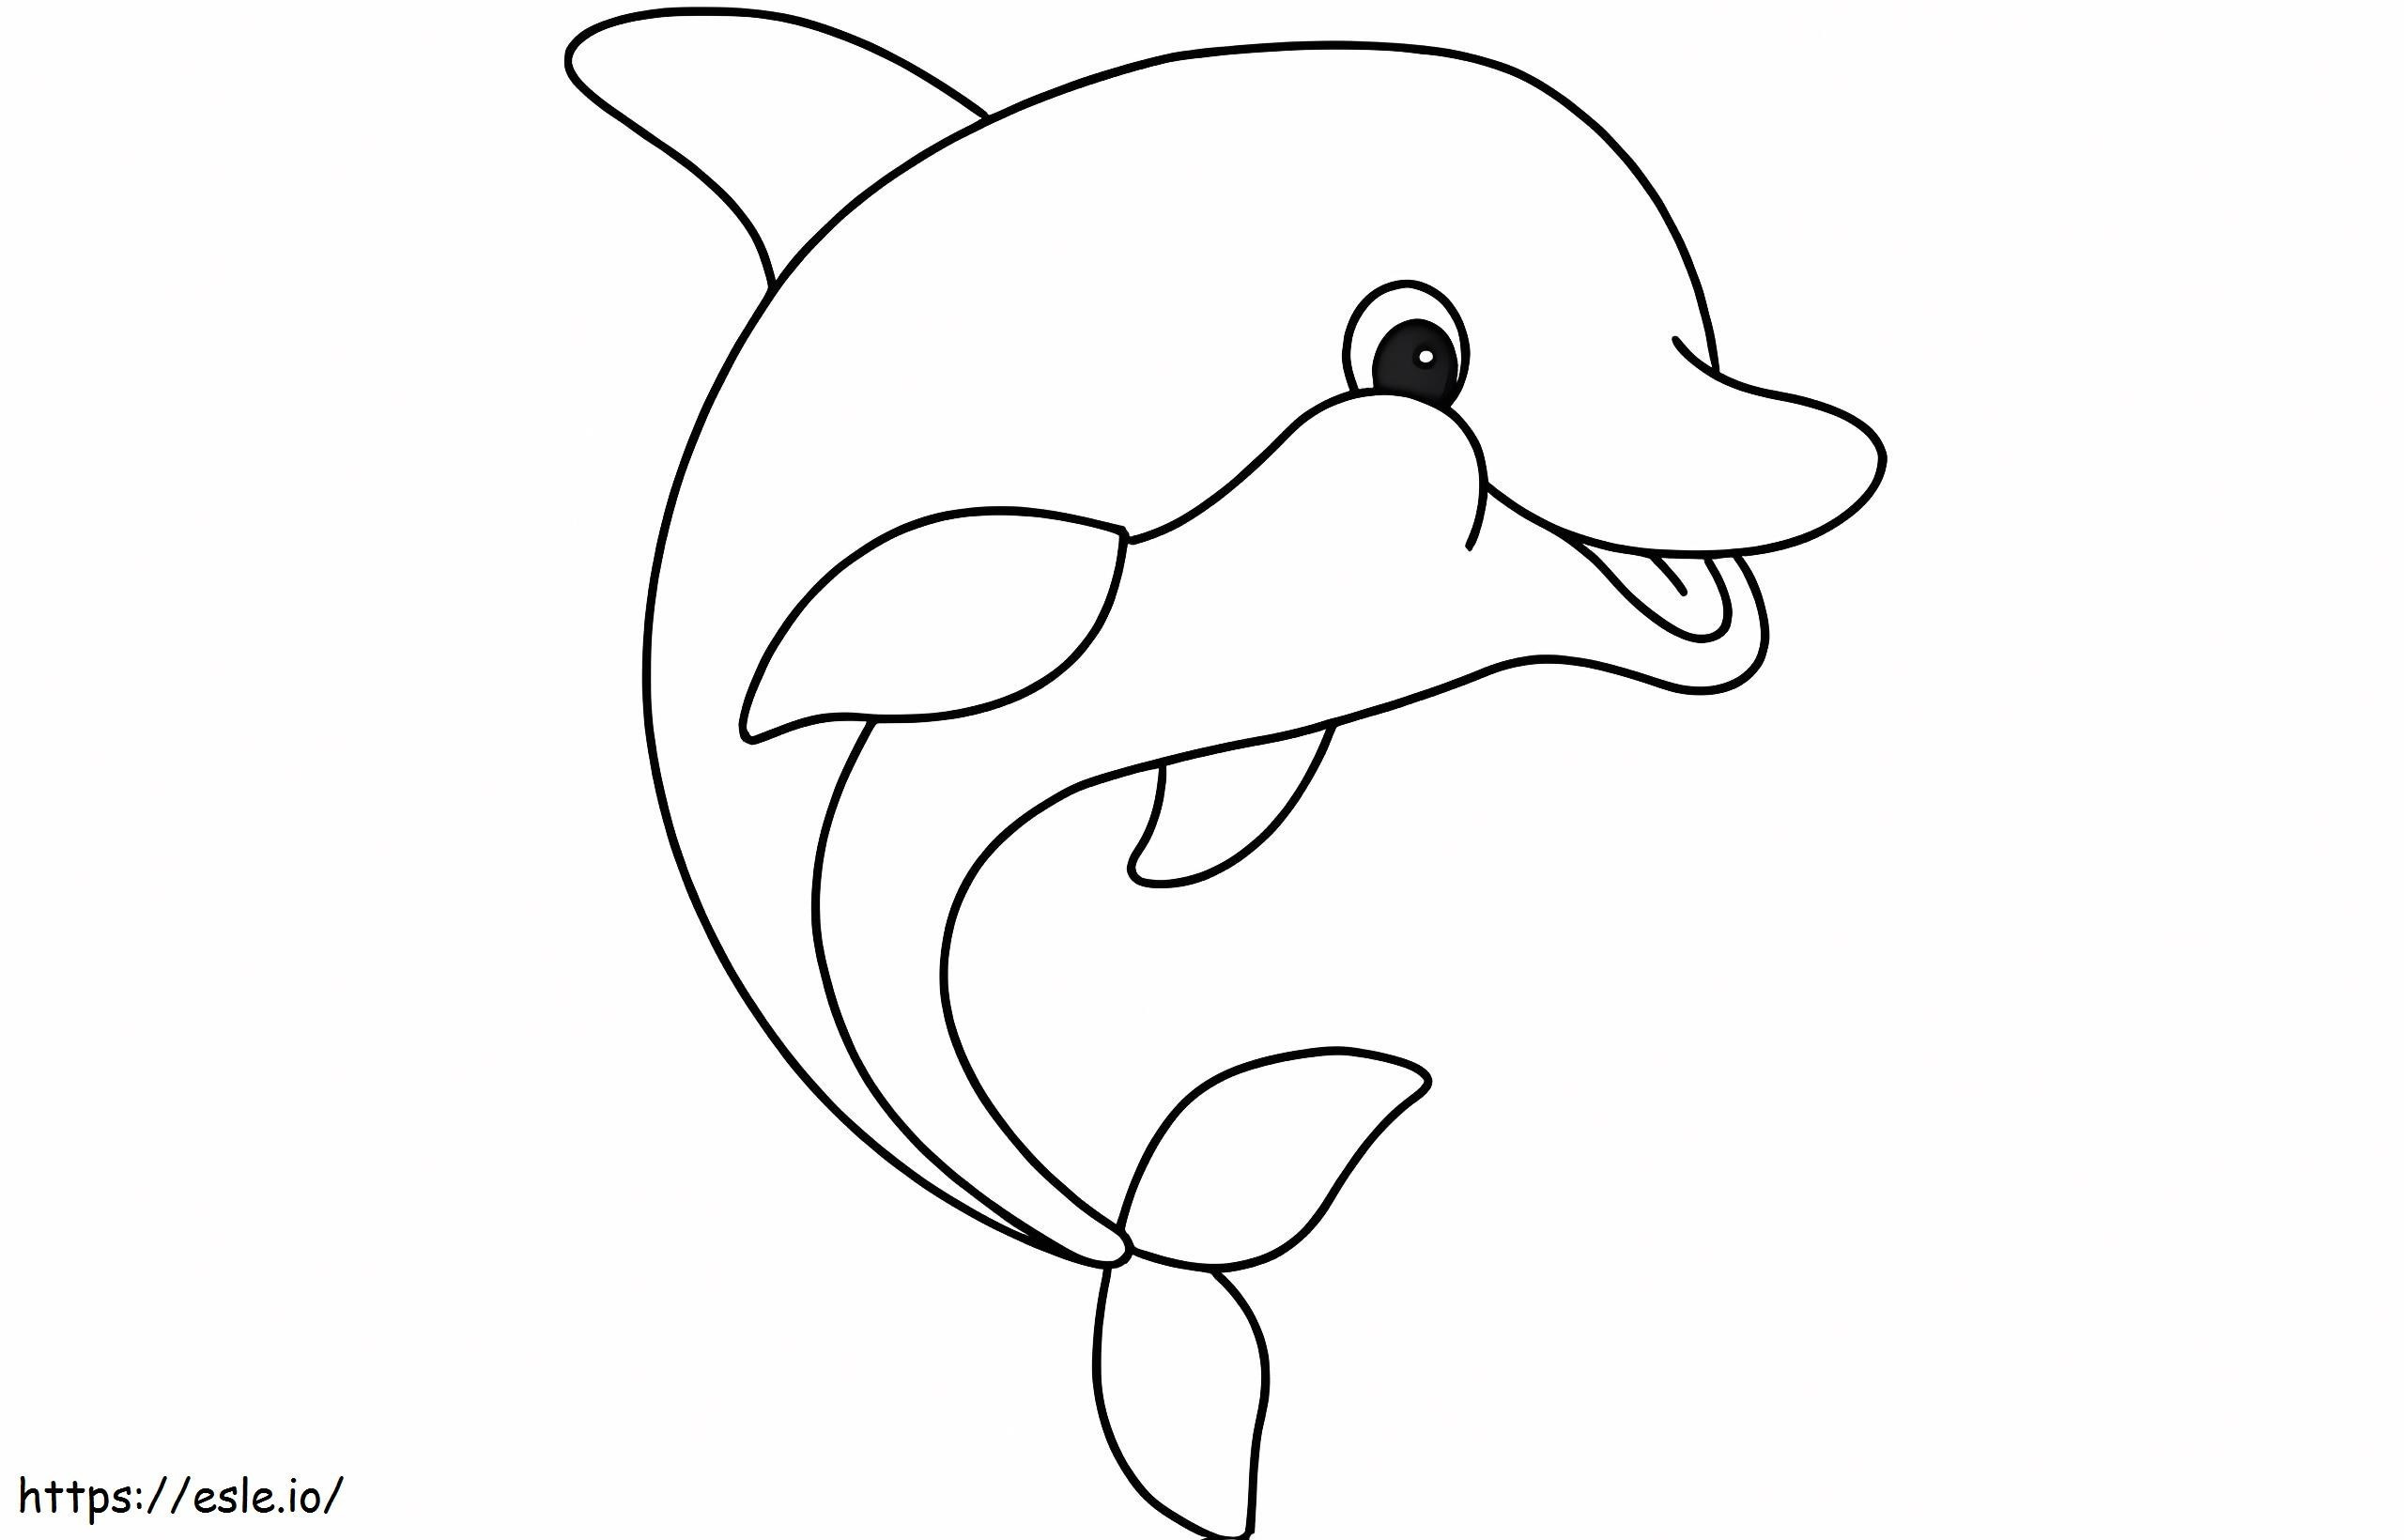 Beeindruckender Delphin ausmalbilder